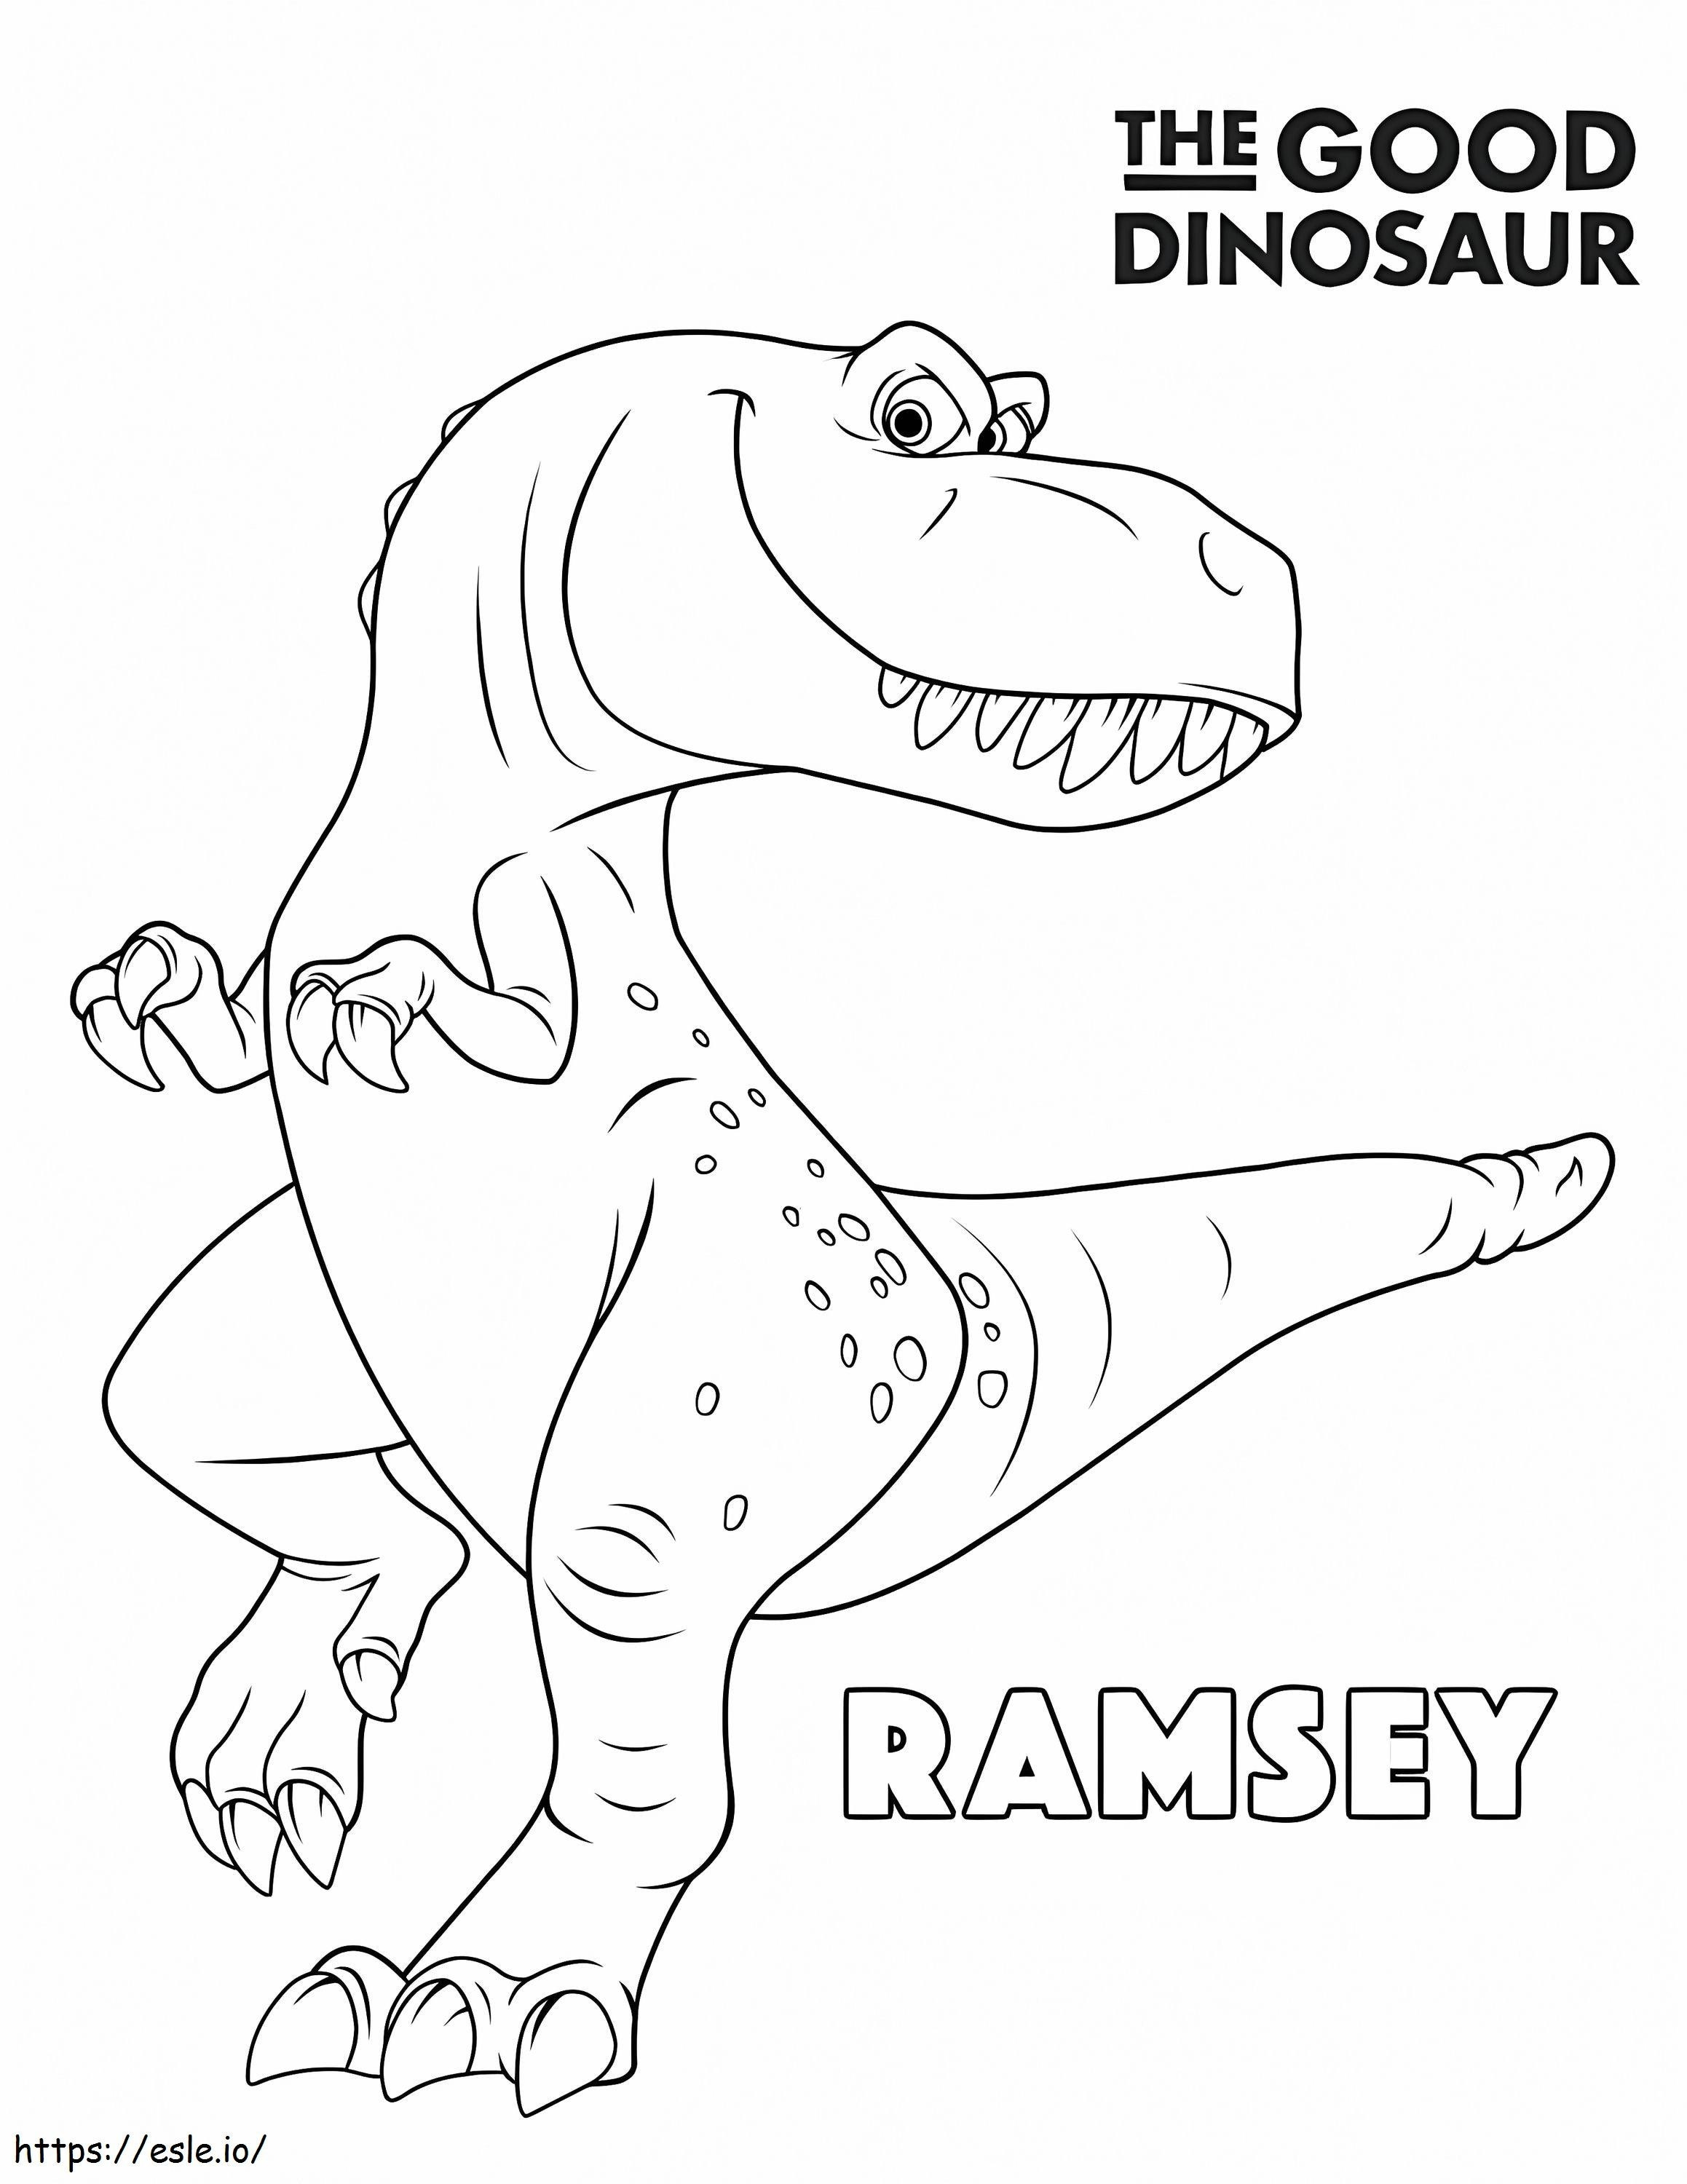 Ramsey z „Dobrego dinozaura”. kolorowanka